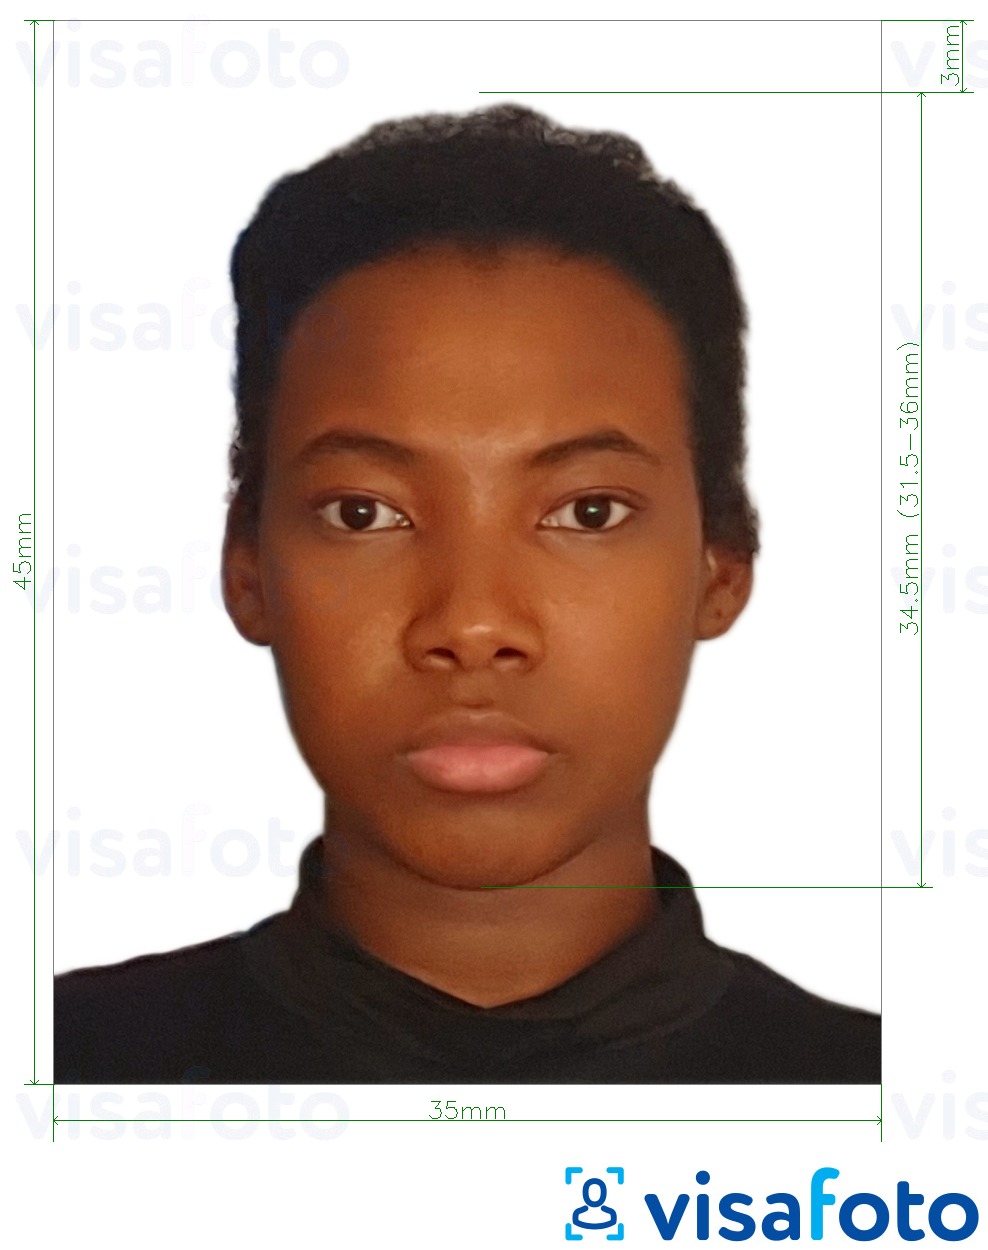 Fotobeispiel für Nigeria Visum 3,5x4,5 cm (35x45 mm) mit genauer größenangabe